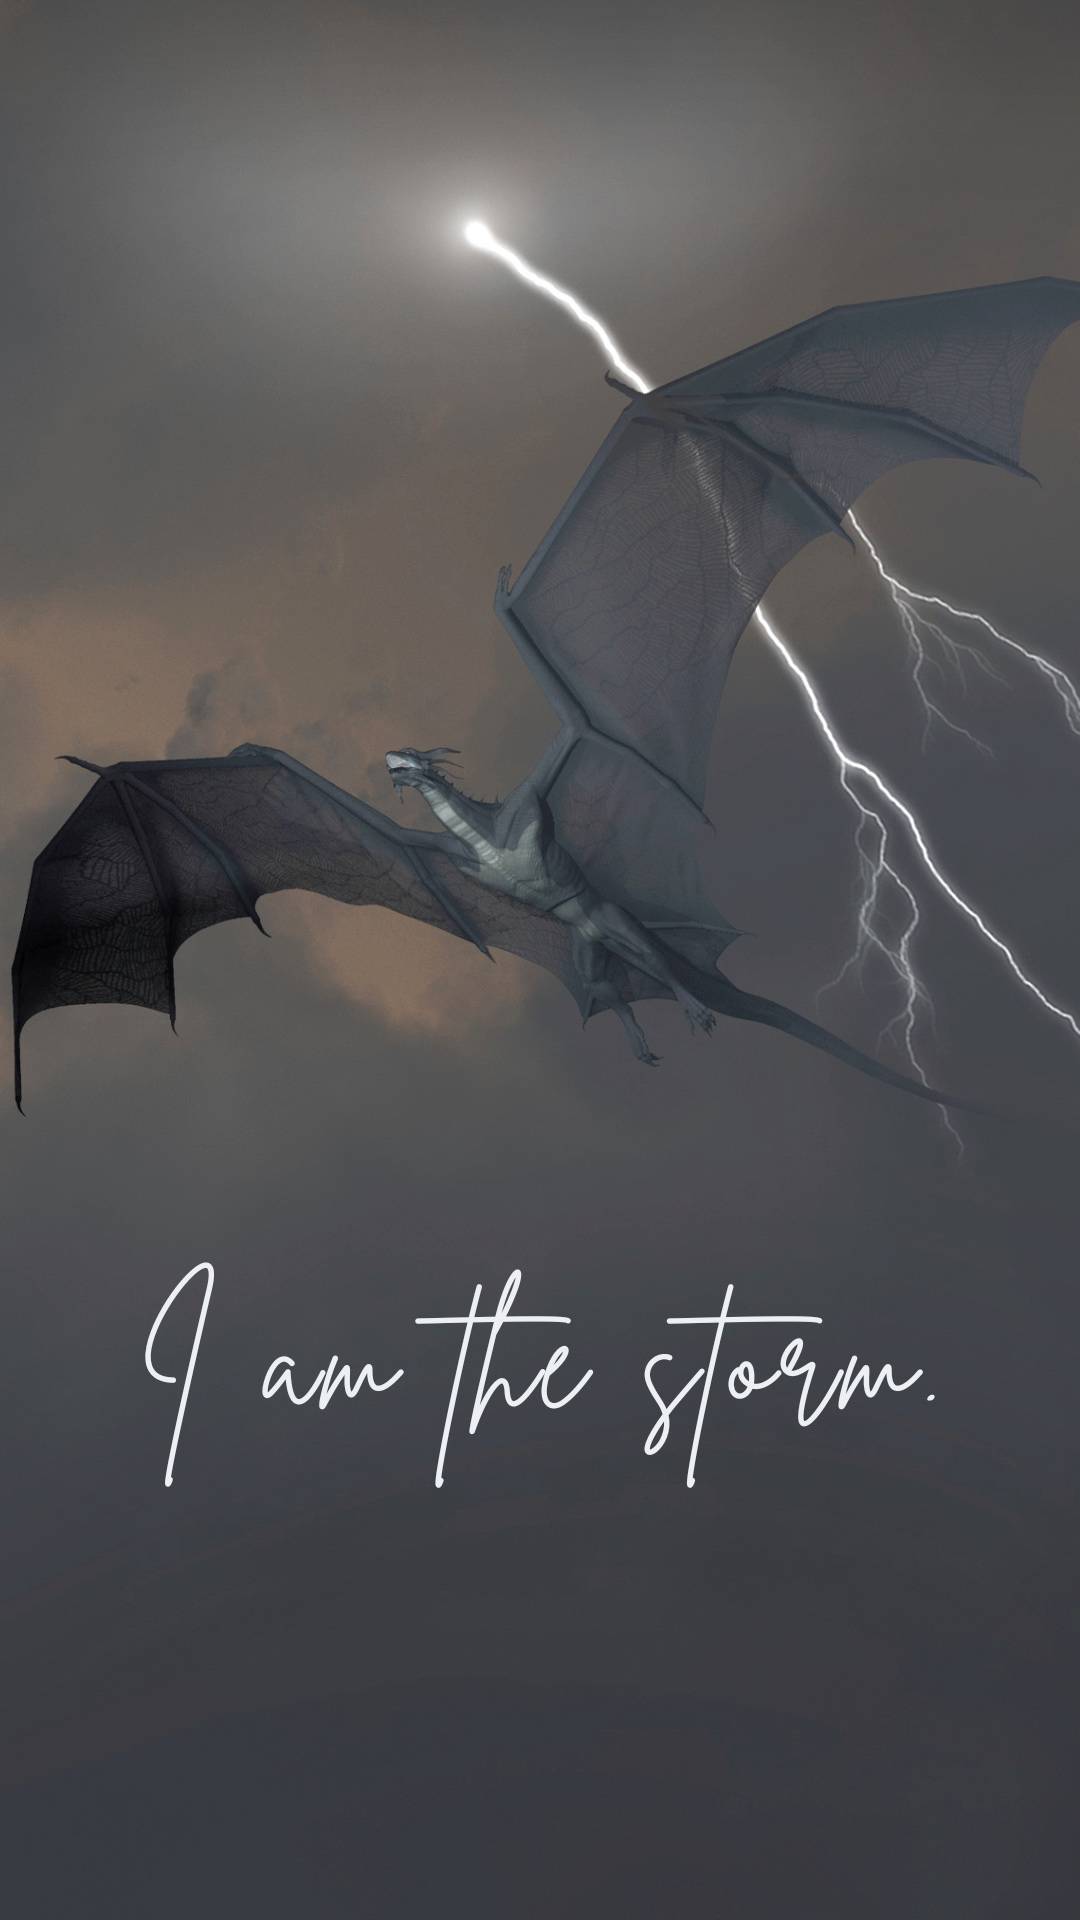 I am the storm.